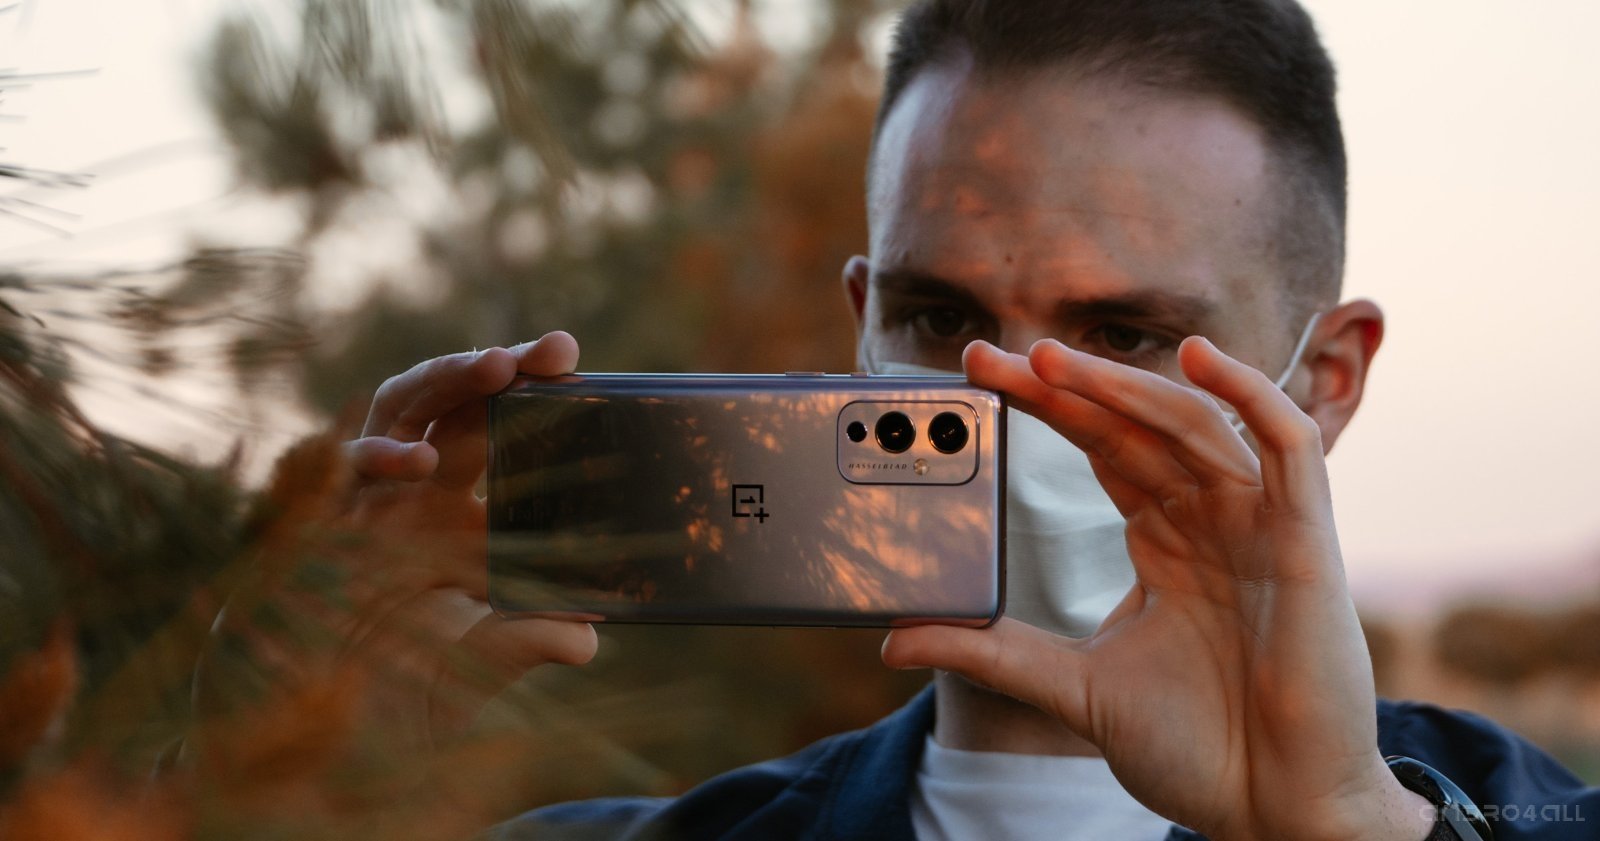 Fotografía móvil: 4 motivos de peso para que dejes de usar el flash en tus tomas